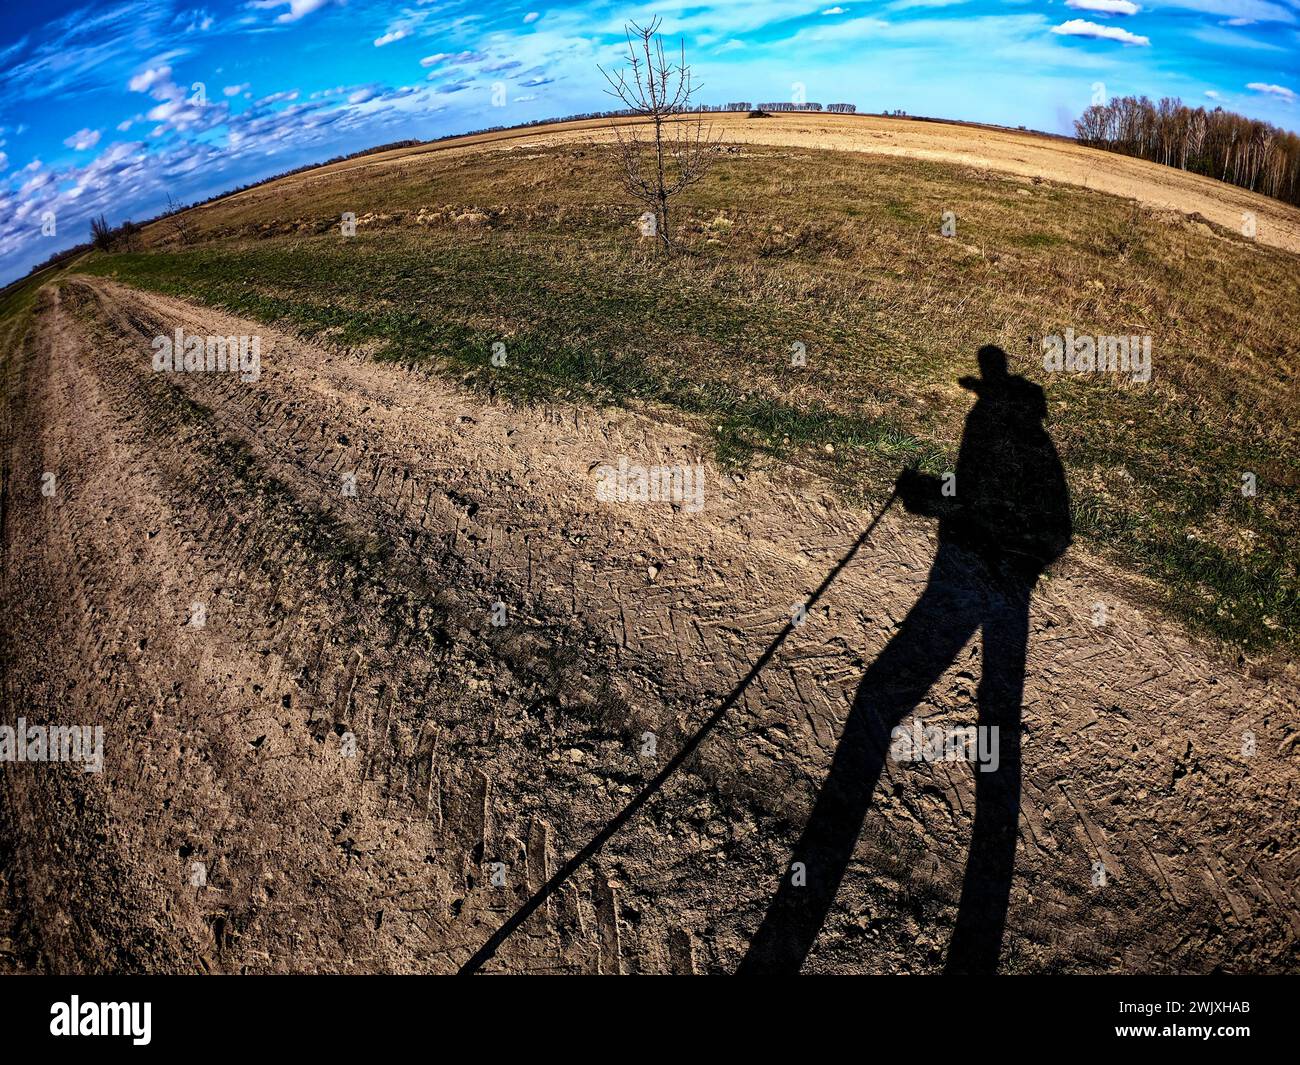 Das Bild fängt den Schatten einer Person ein, die einen Stock hält und vor einem offenen Feld mit einem einsamen Baum und weit entfernten Wäldern steht. Stockfoto